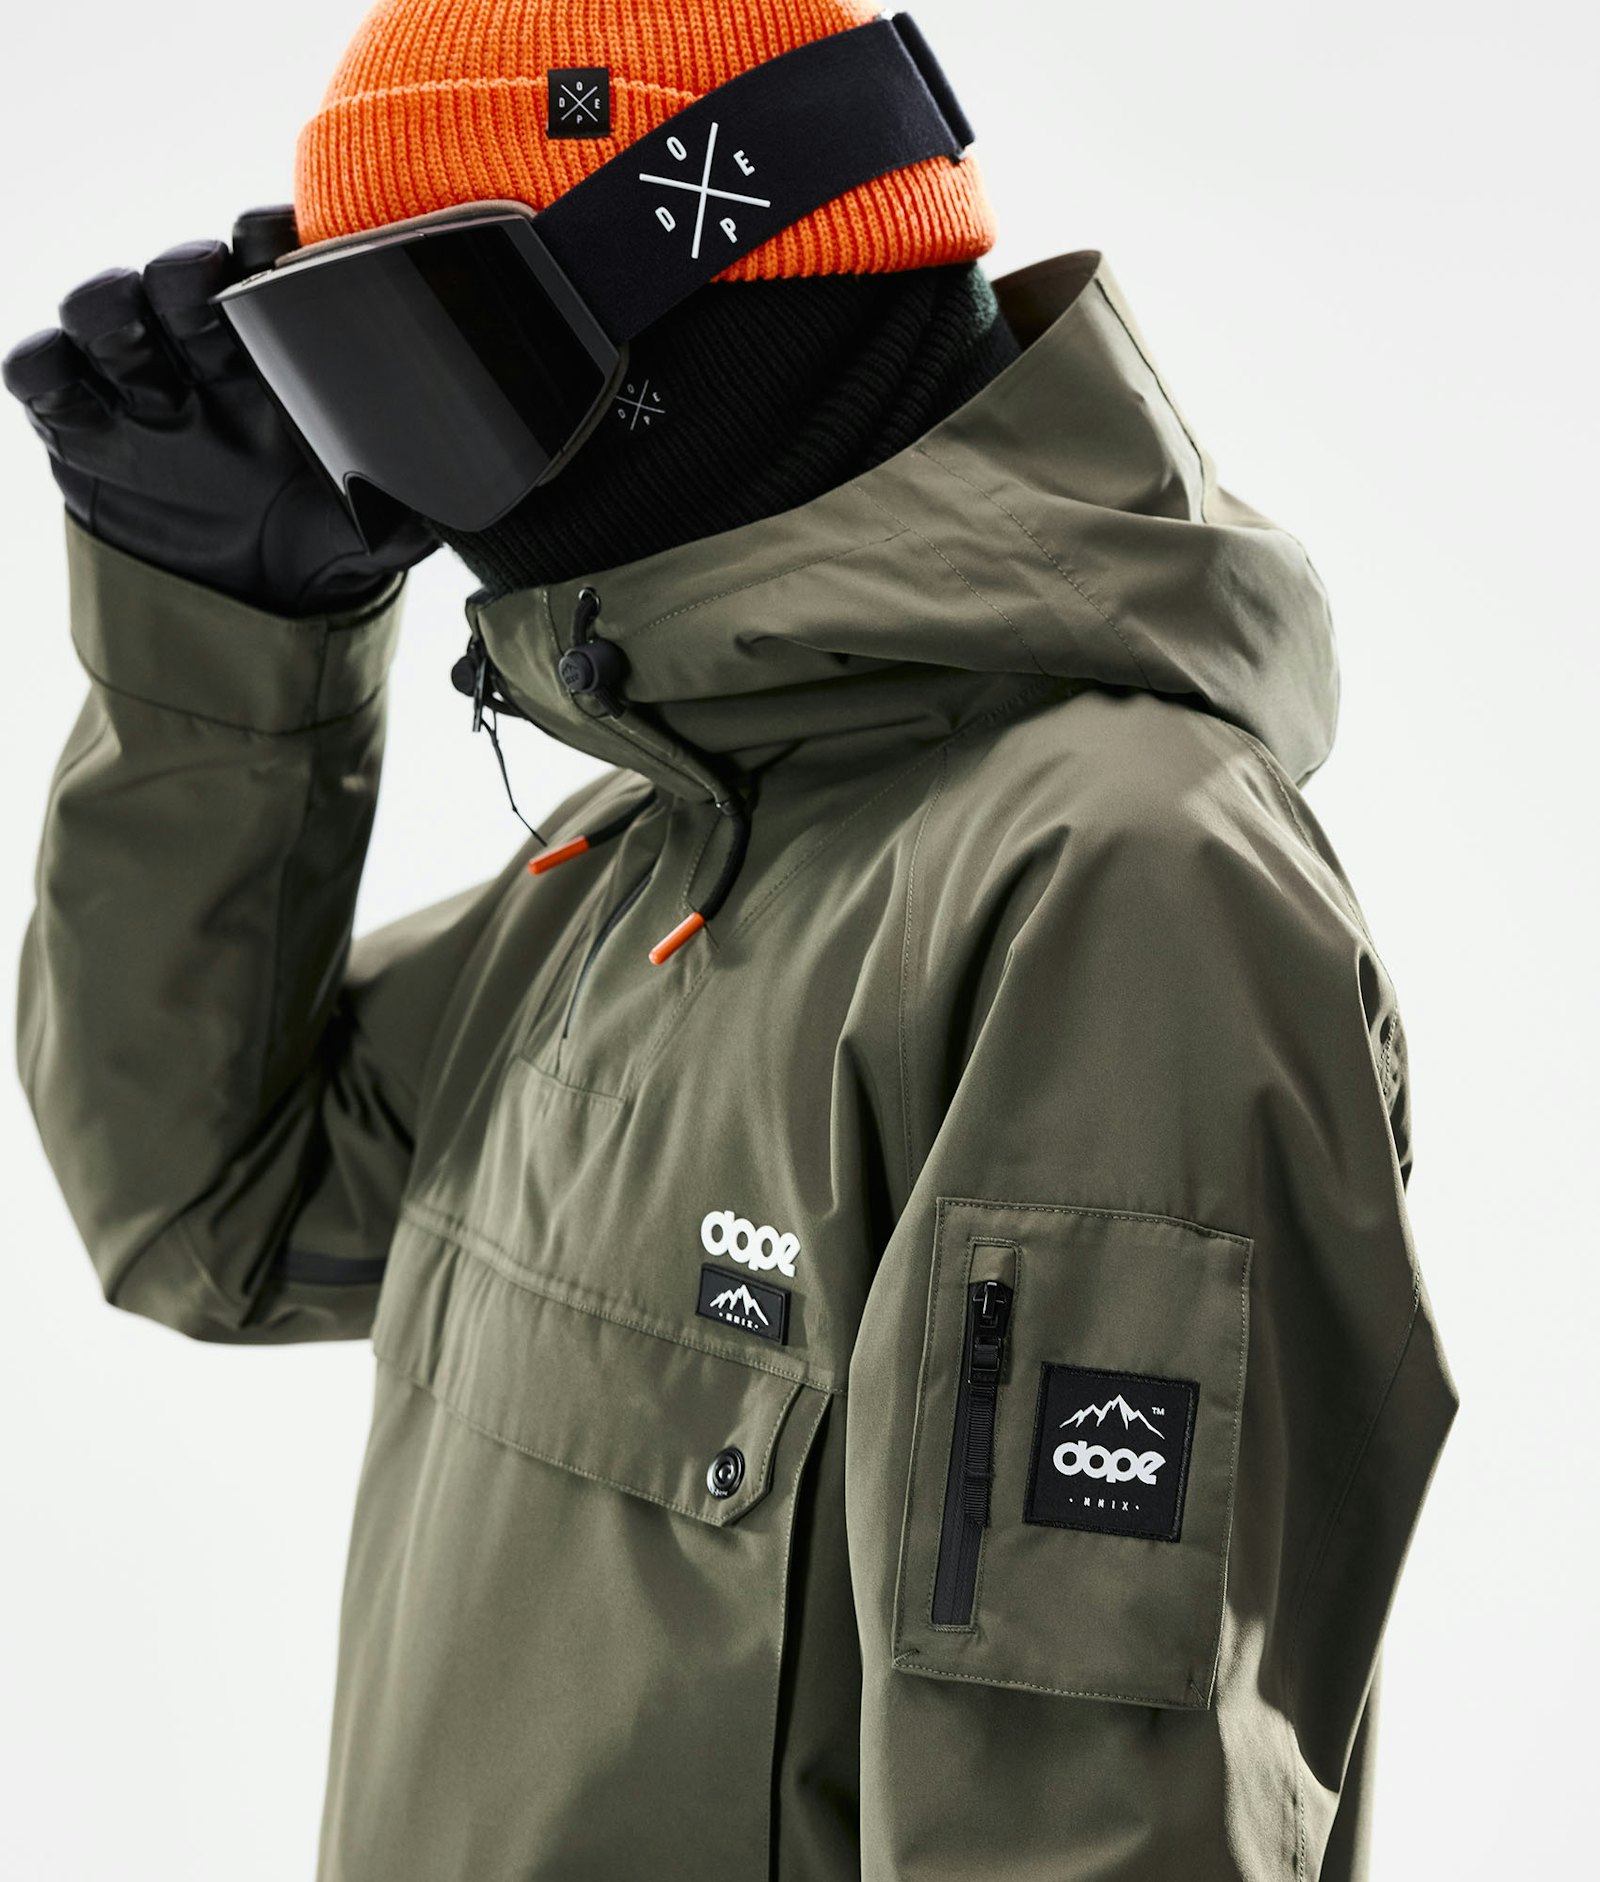 Annok 2021 Snowboard jas Heren Olive Green/Black